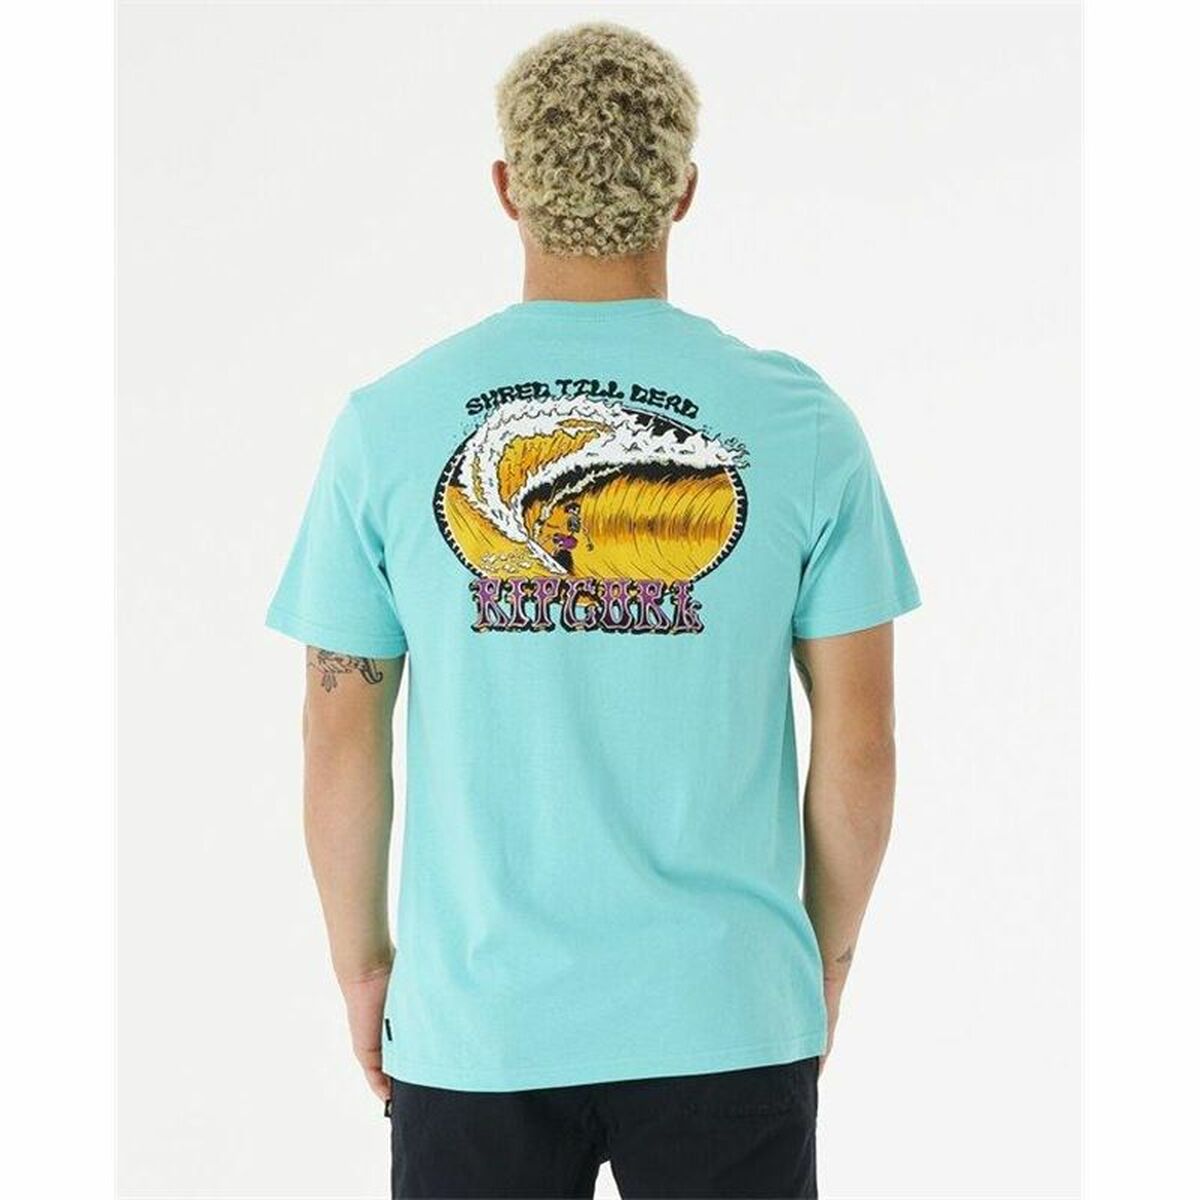 T-Shirt Rip Curl Slasher Aquamarin Herren